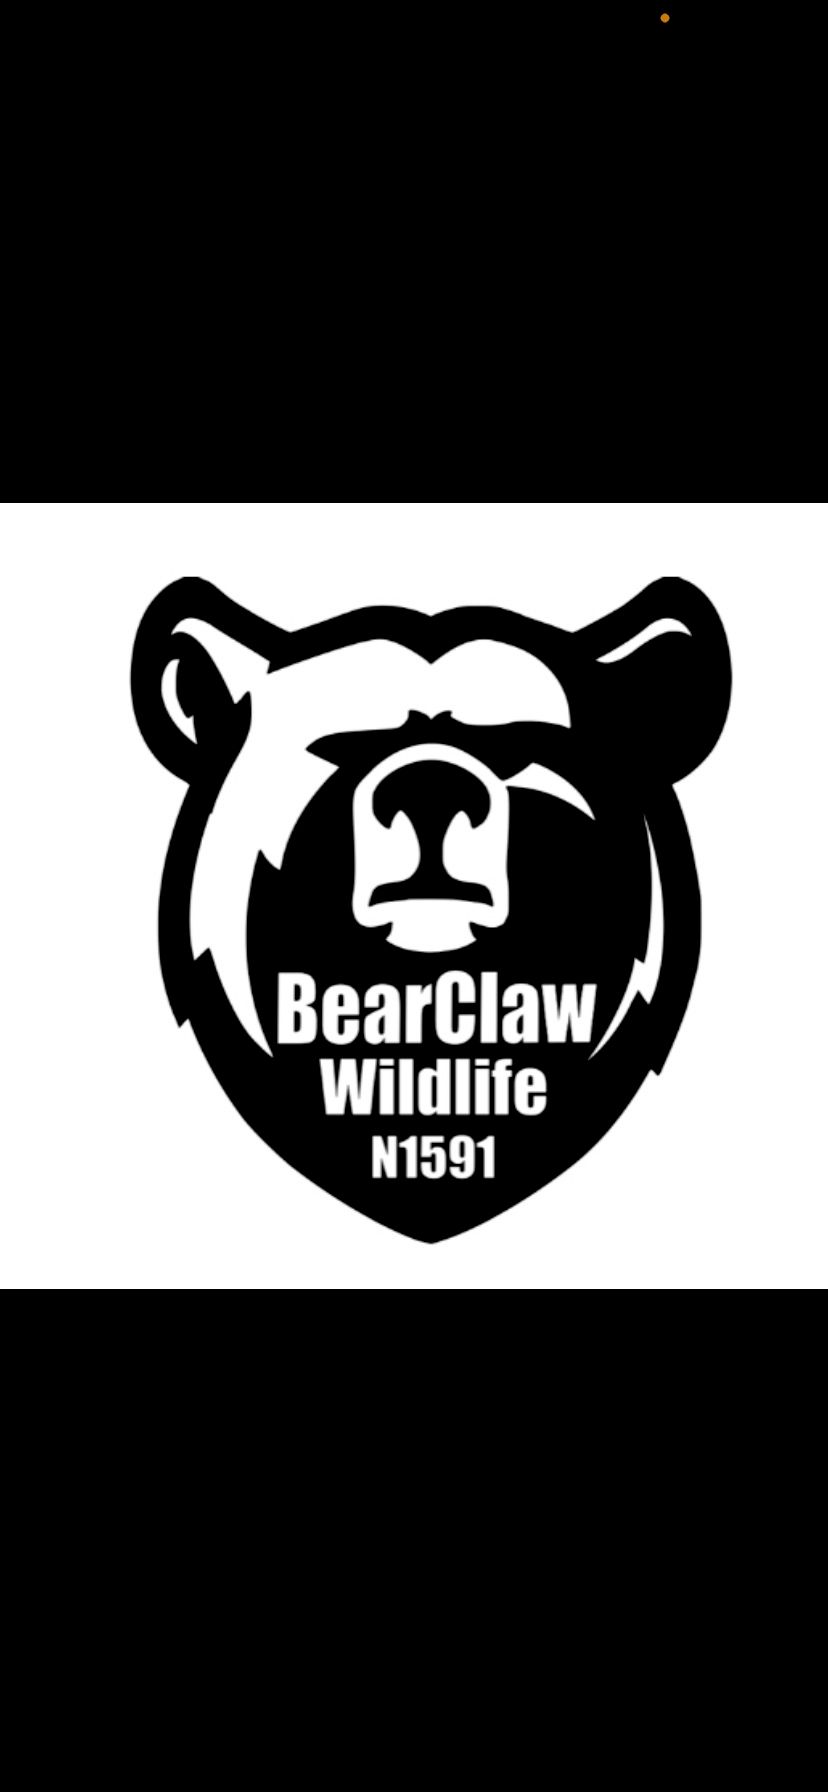 BearClaw Wildlife